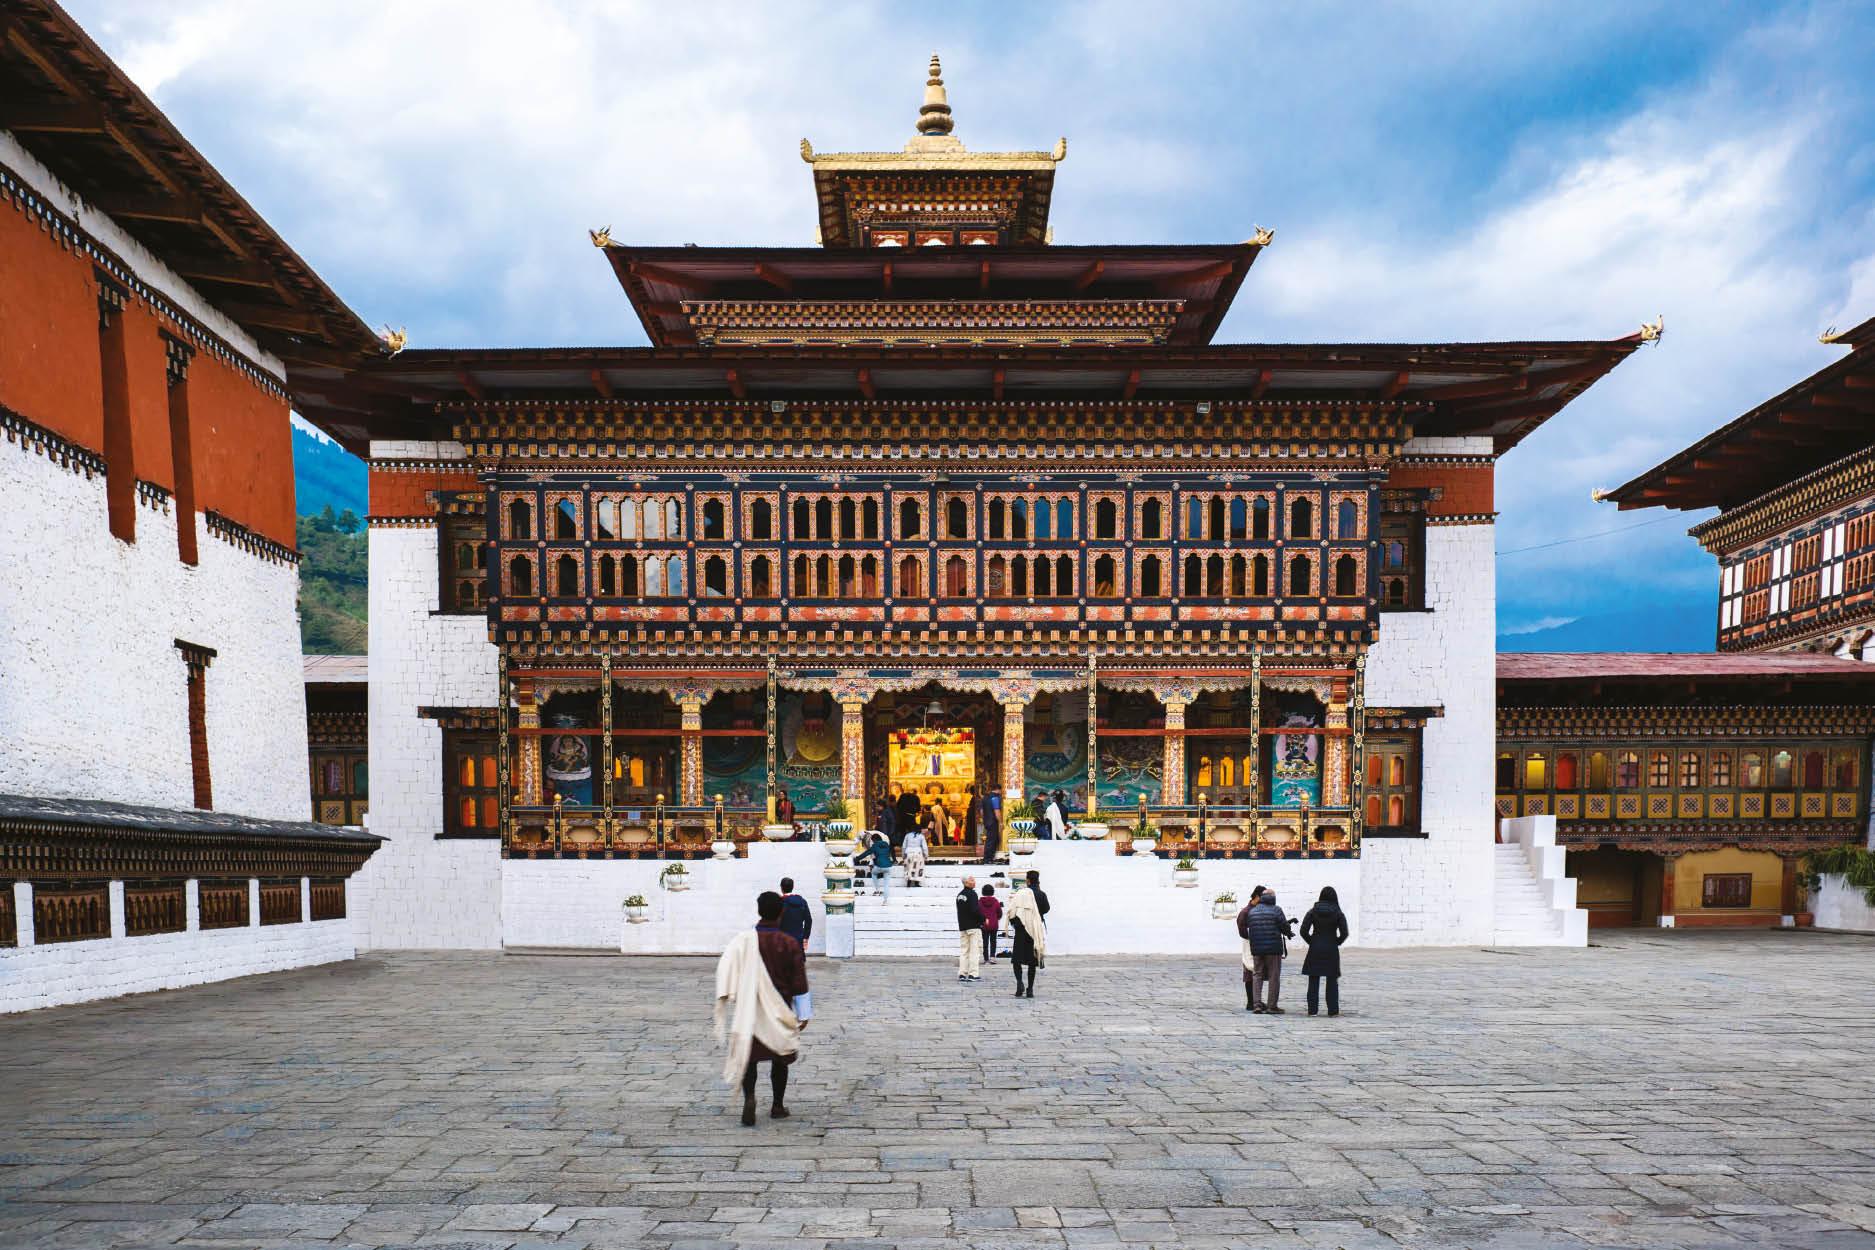 王者氣派：Dasho Sangay Wangchuk帶我們遊歷神秘國度不丹